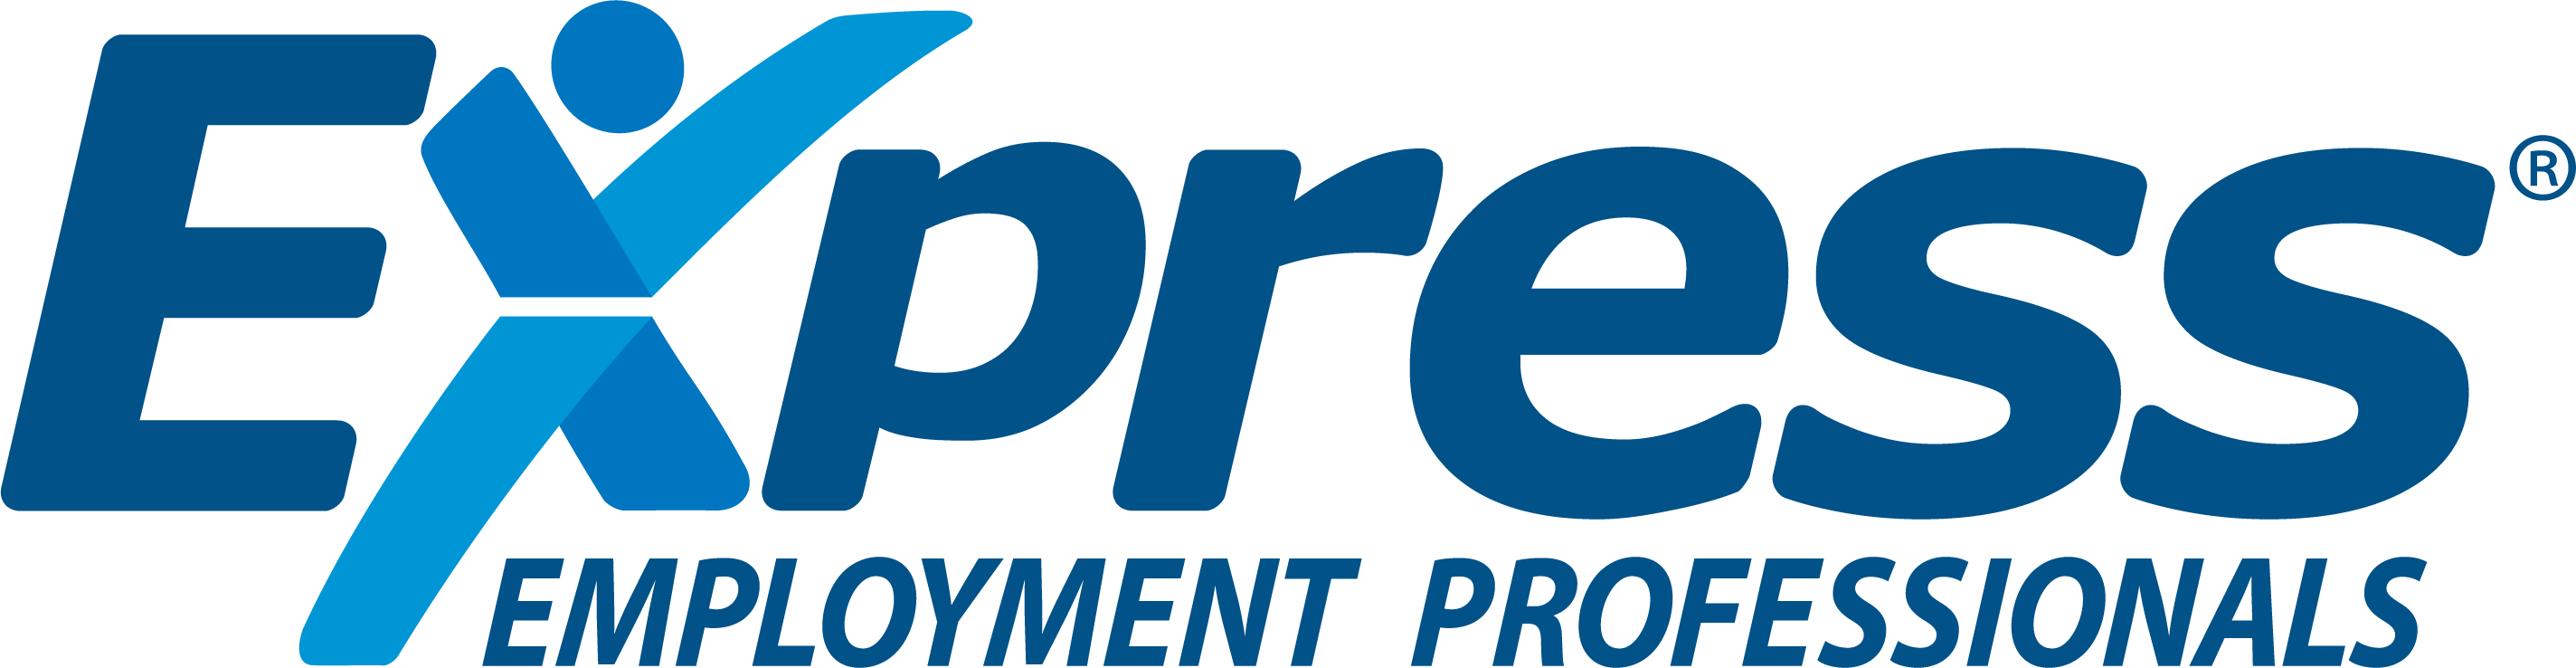 EEP-logo